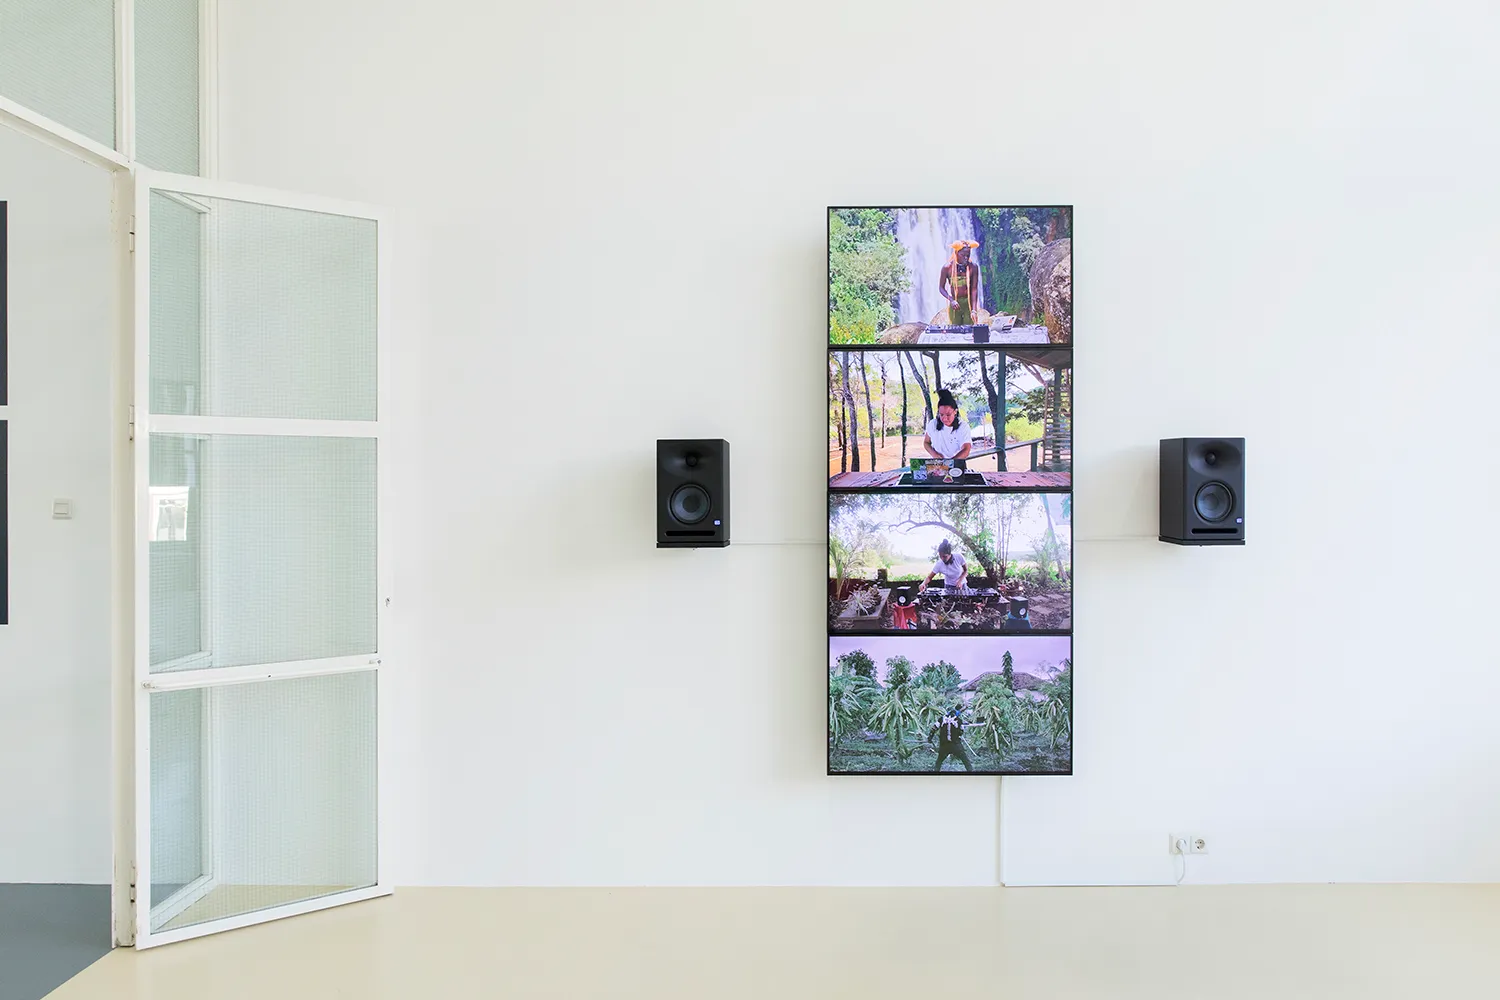 4 flatscreens die een verticale streep vormen op de muur met 2 speakers. Op elk scherm treedt een andere DJ op, voor een tropische achtergrond.